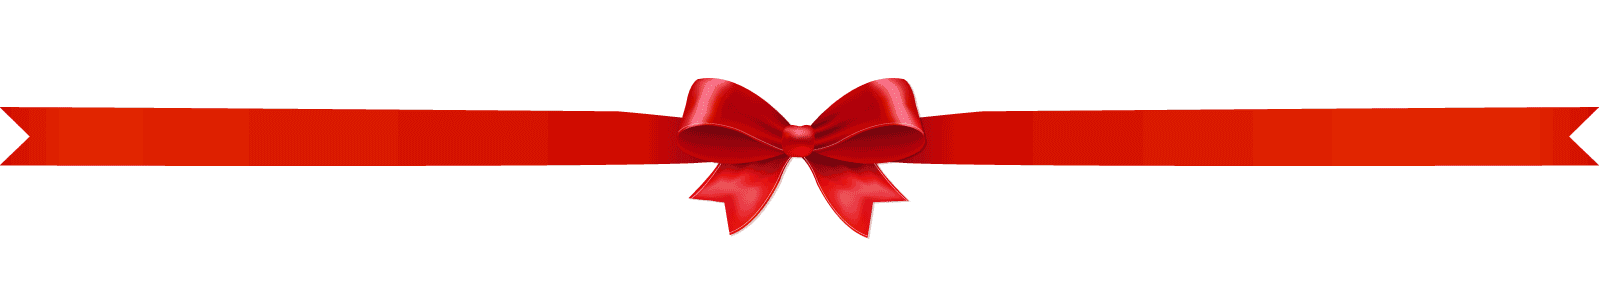 holiday ribbon banner